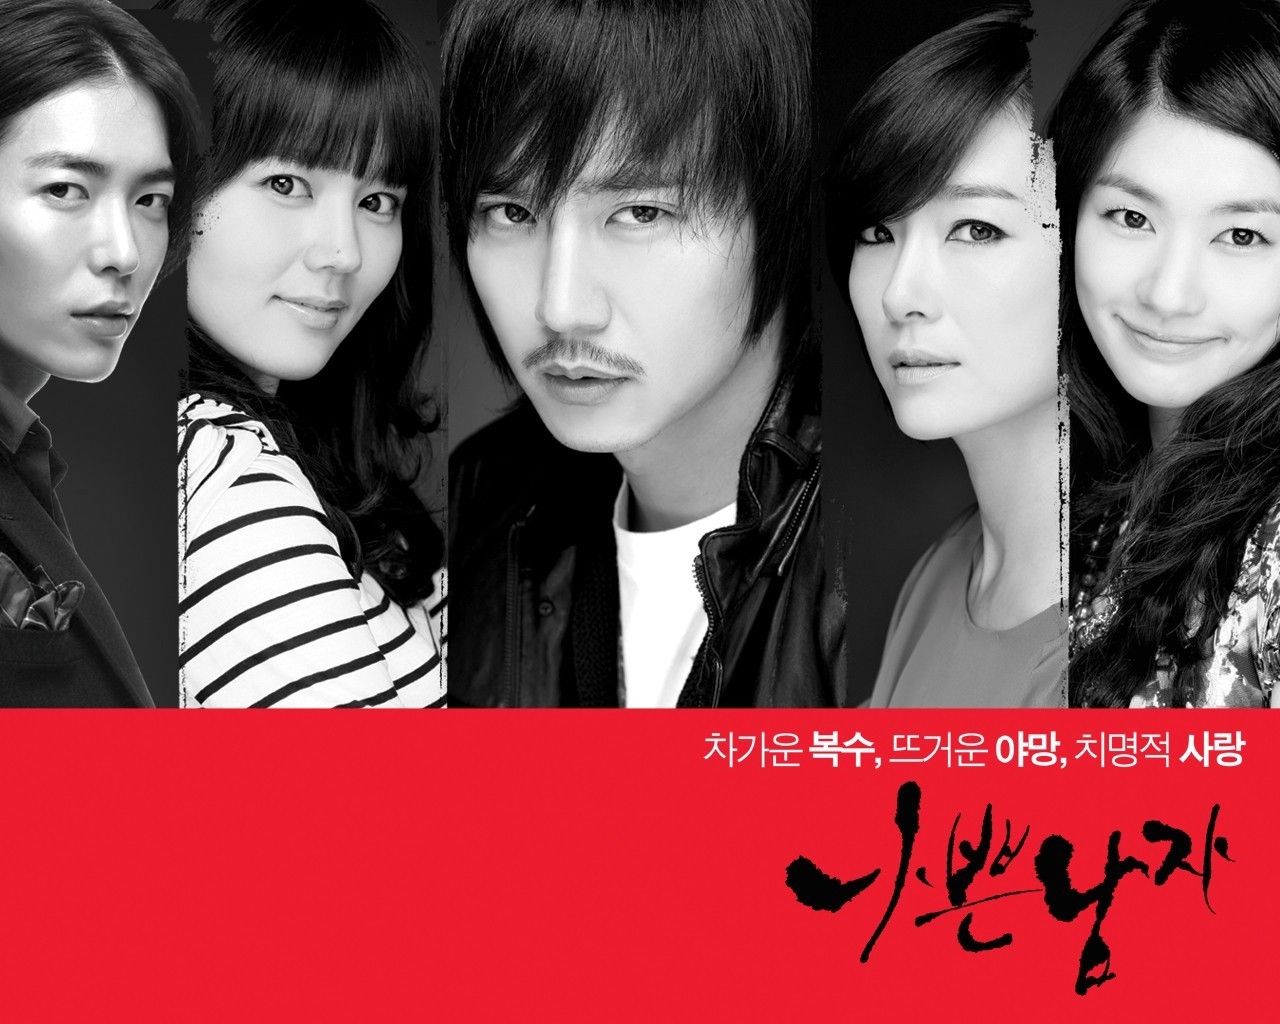 bad guy - Korean Dramas Wallpaper (21700372) - Fanpop